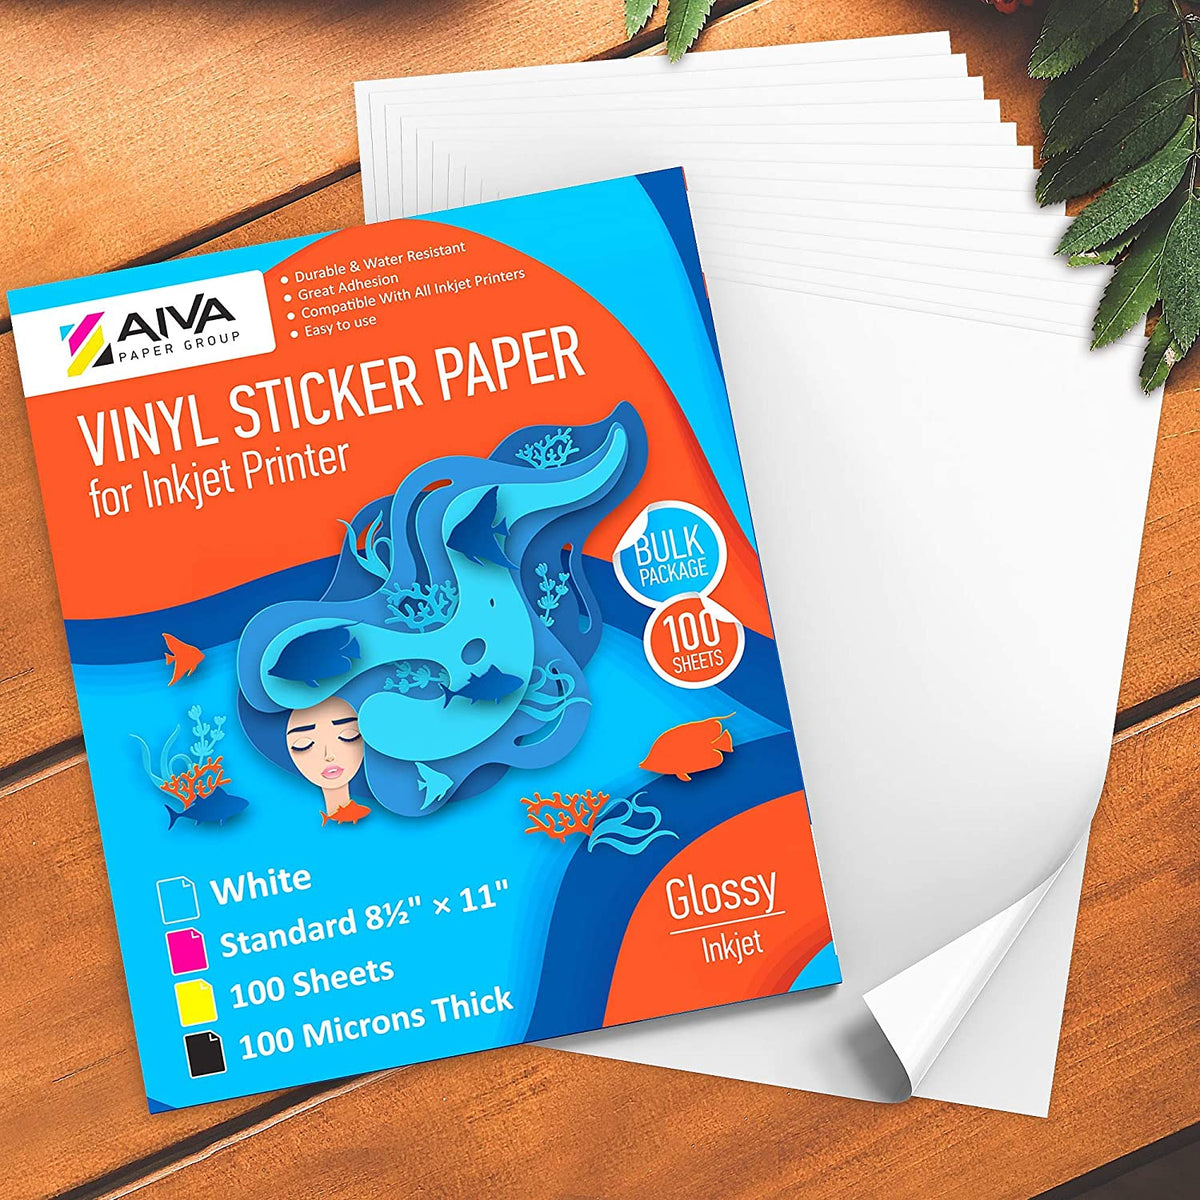 printable-vinyl-sticker-paper-inkjet-glossy-100-sheets-aiva-paper-group